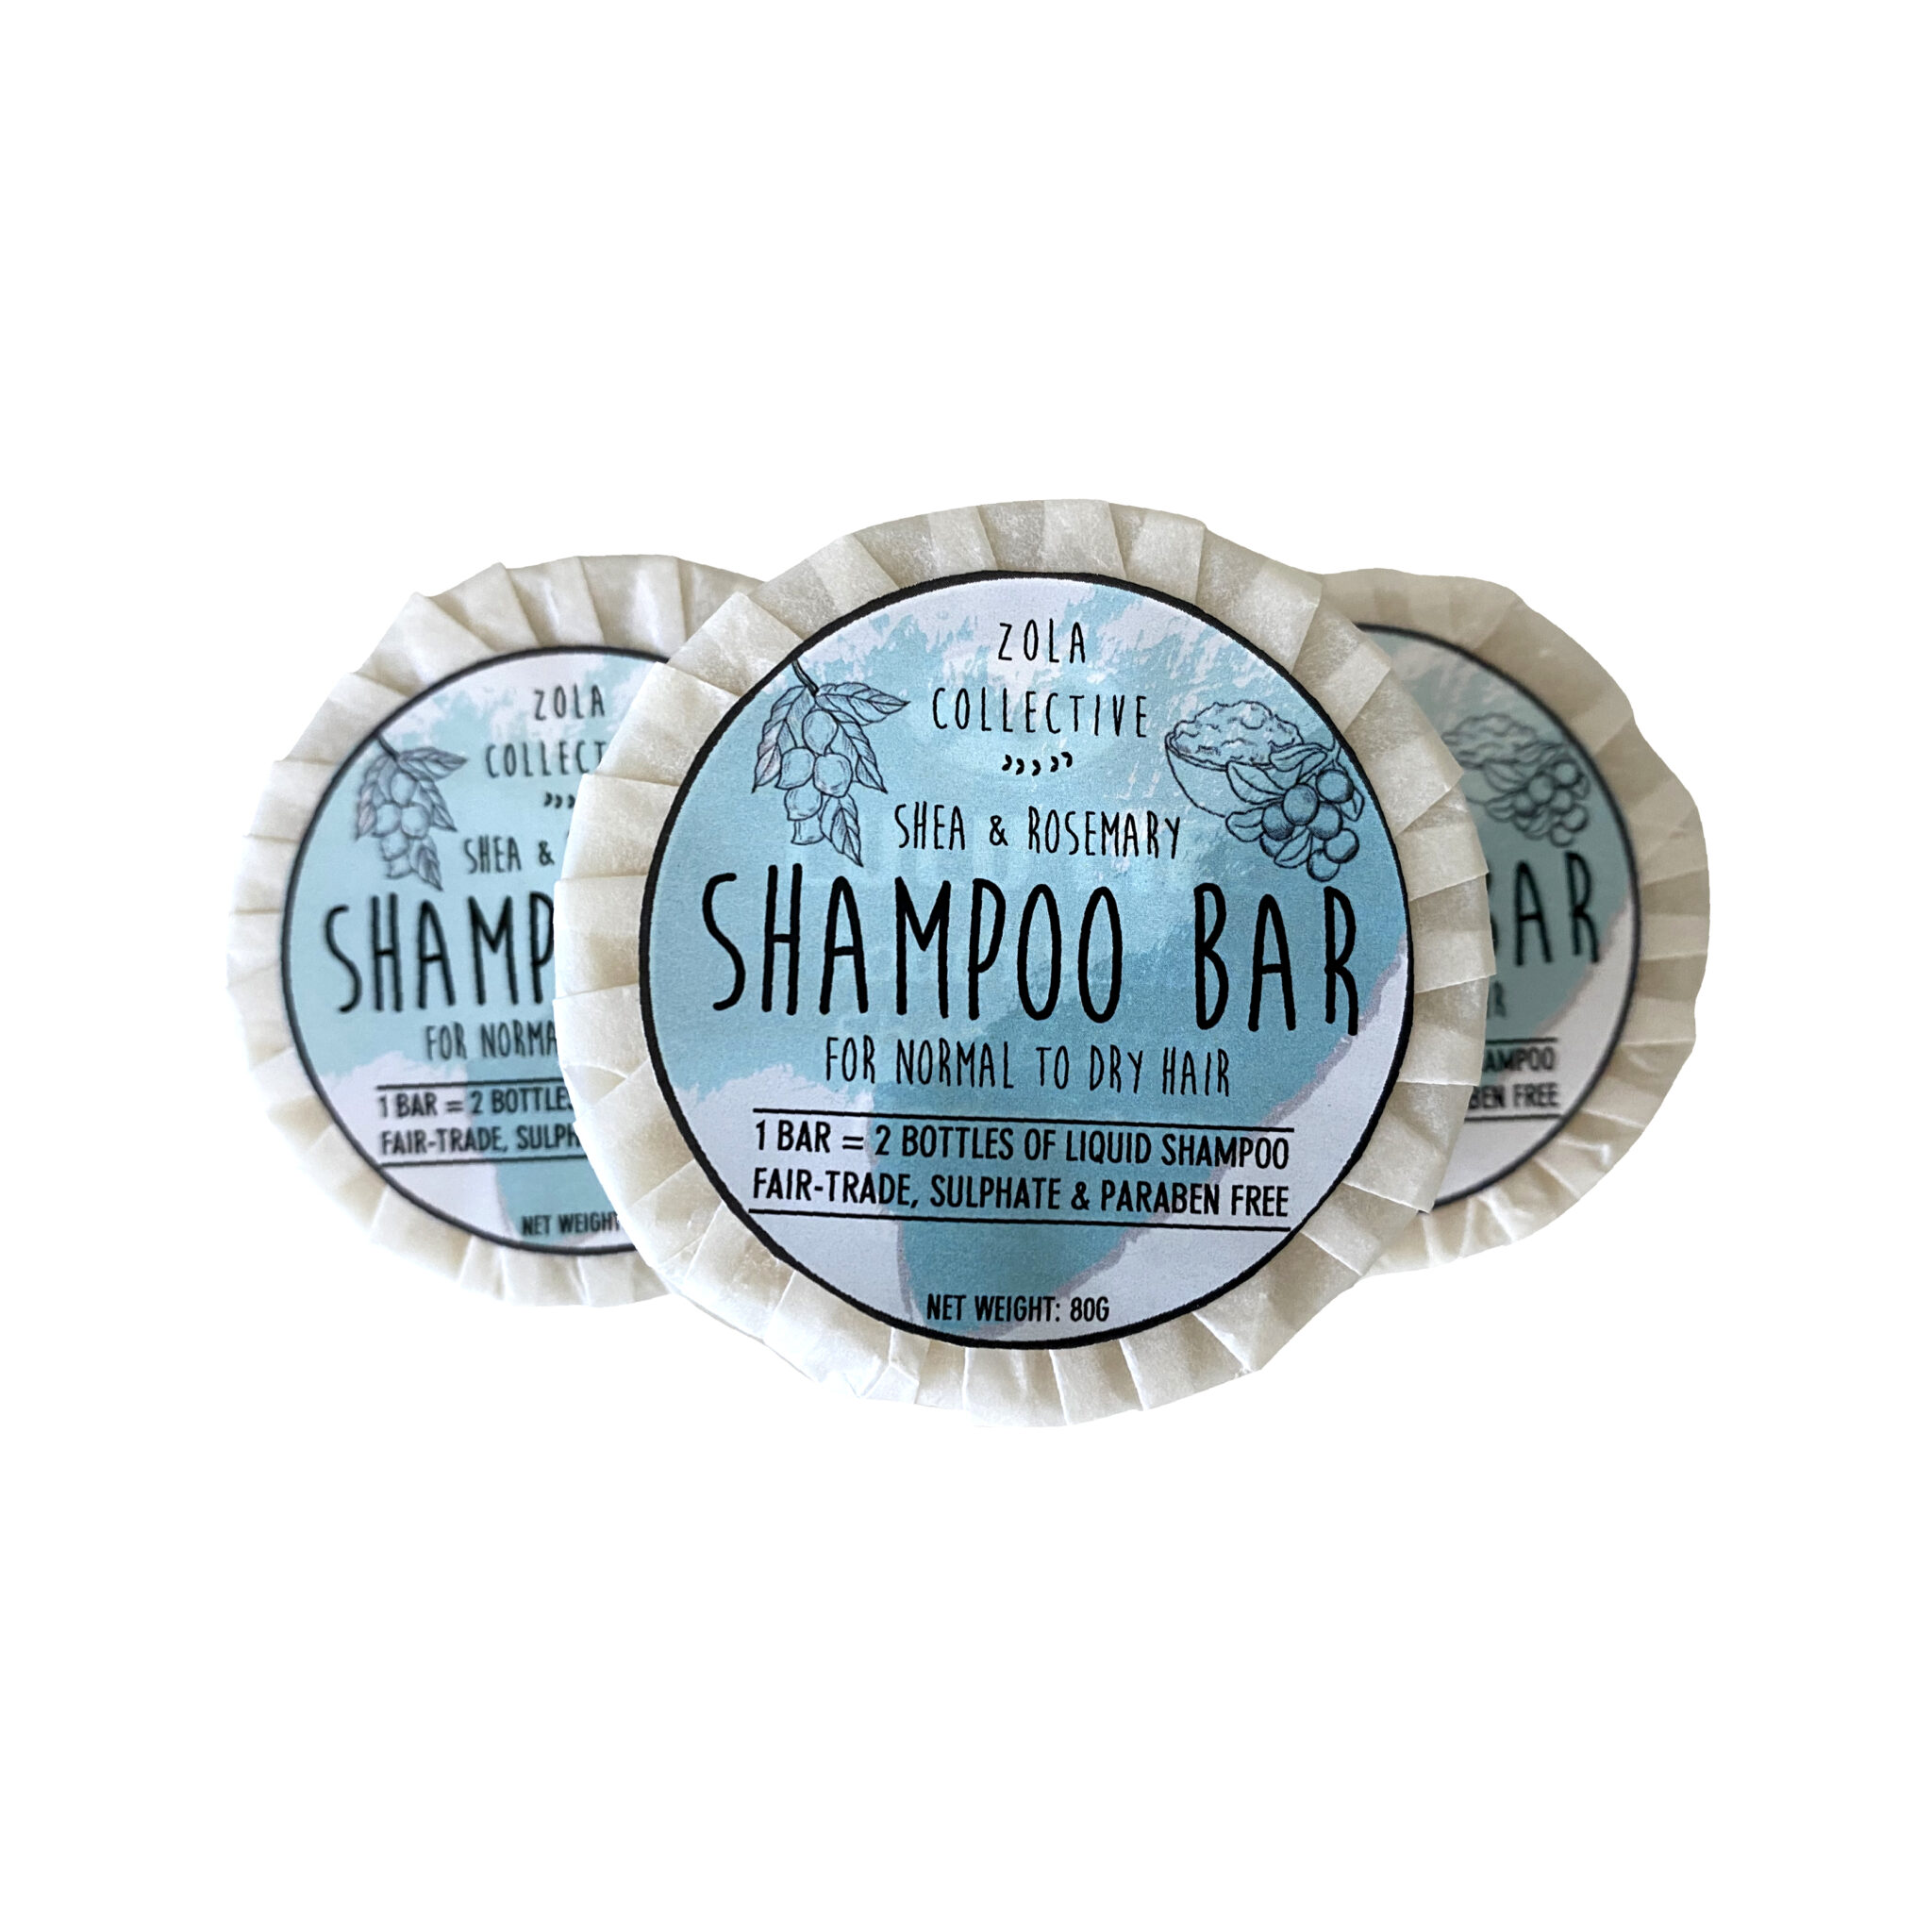 An image of a shampoo bar